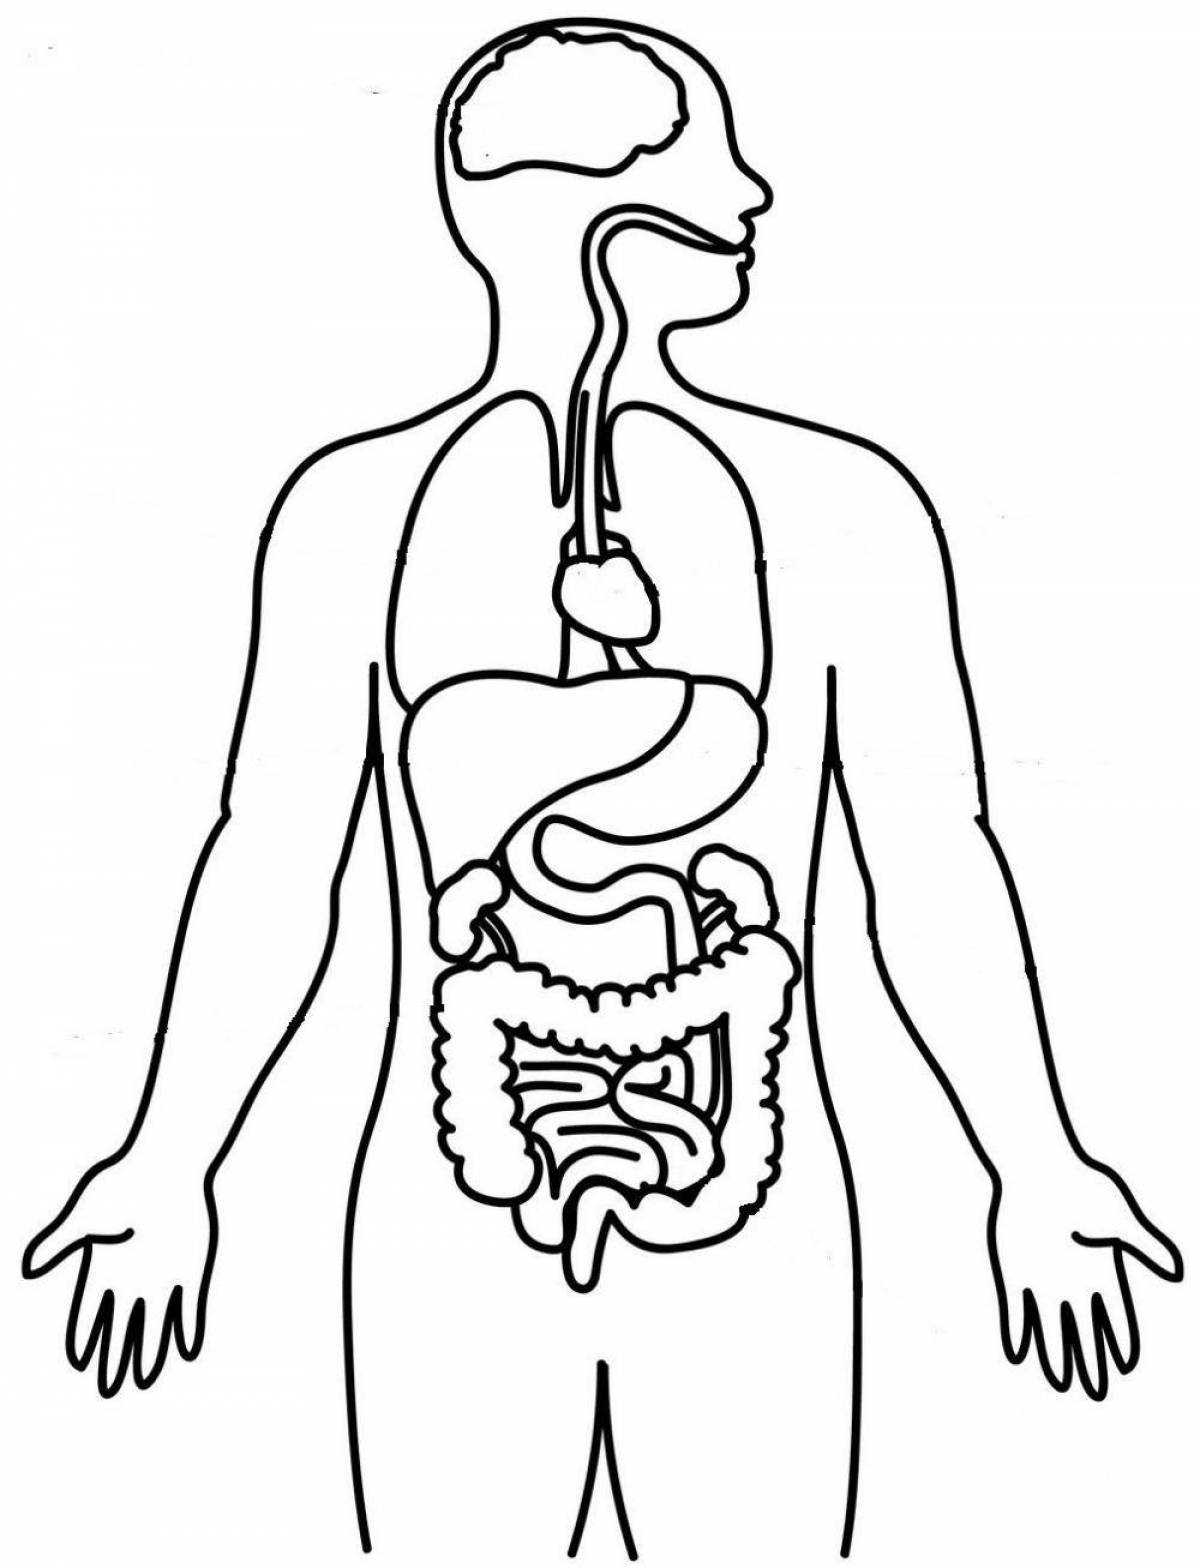 Точная раскраска человеческого тела с внутренними органами